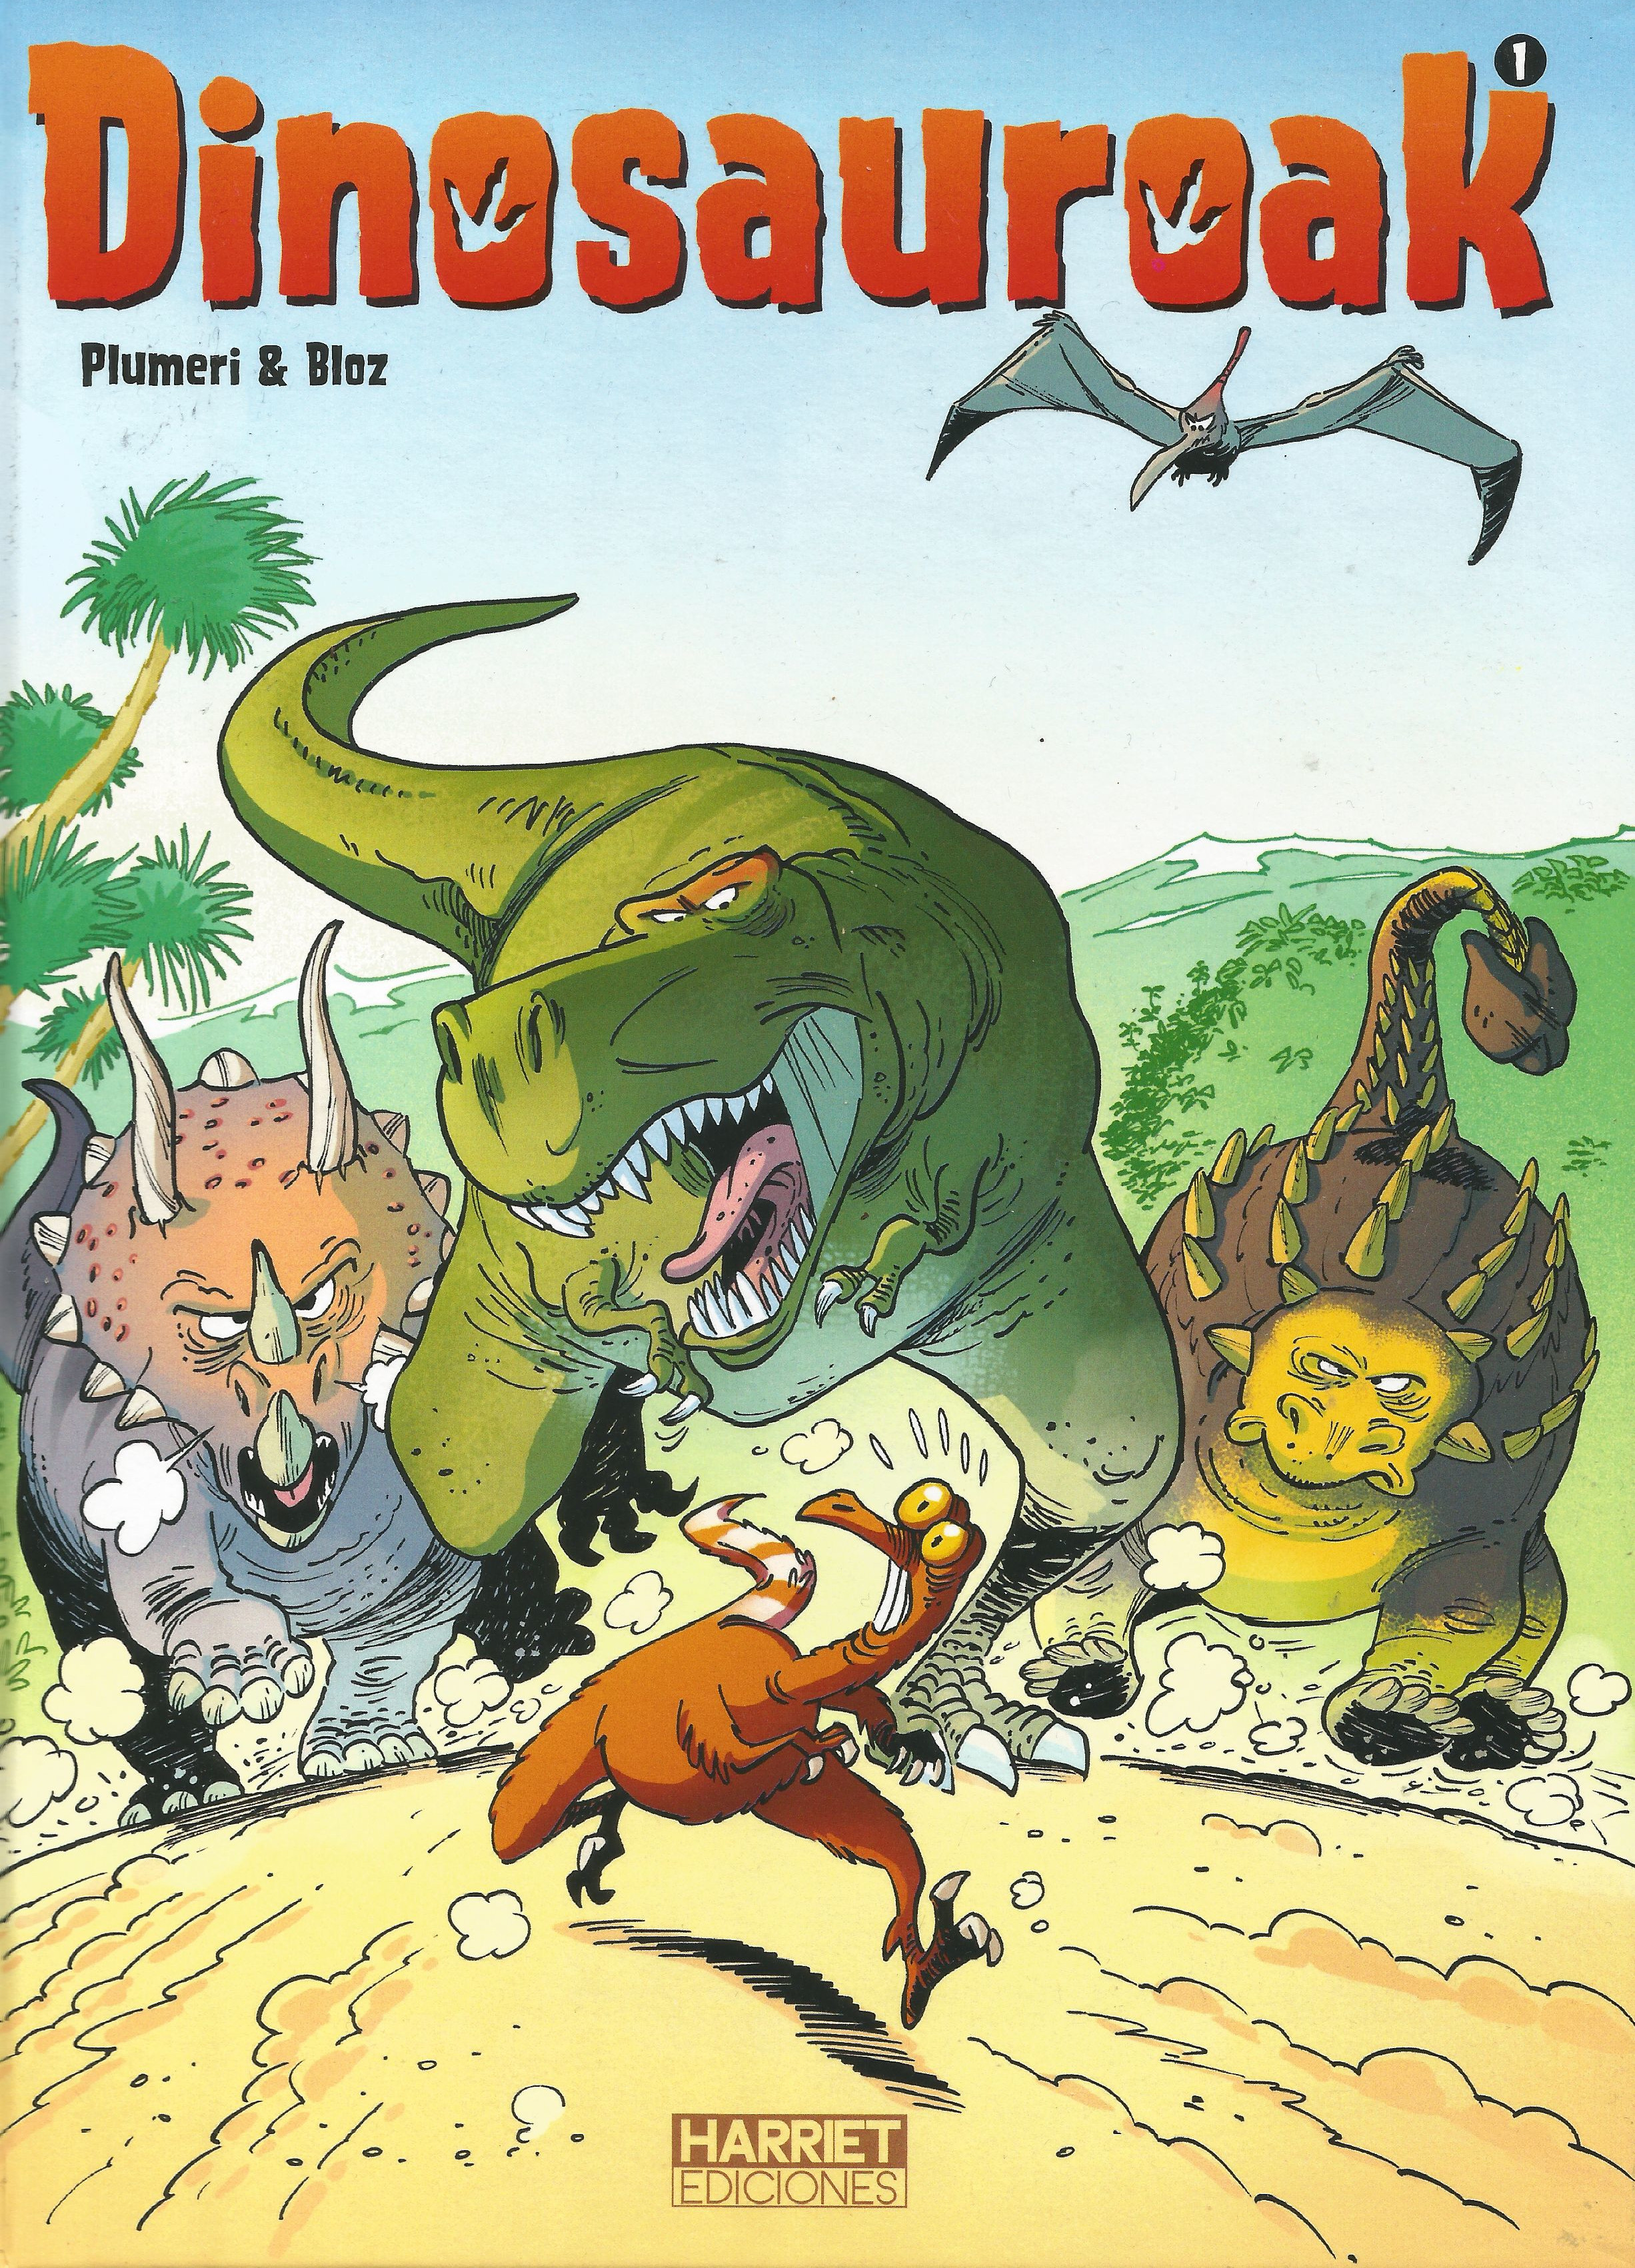 Dinosauroei buruzko jakingarriak, komikian eta umorez